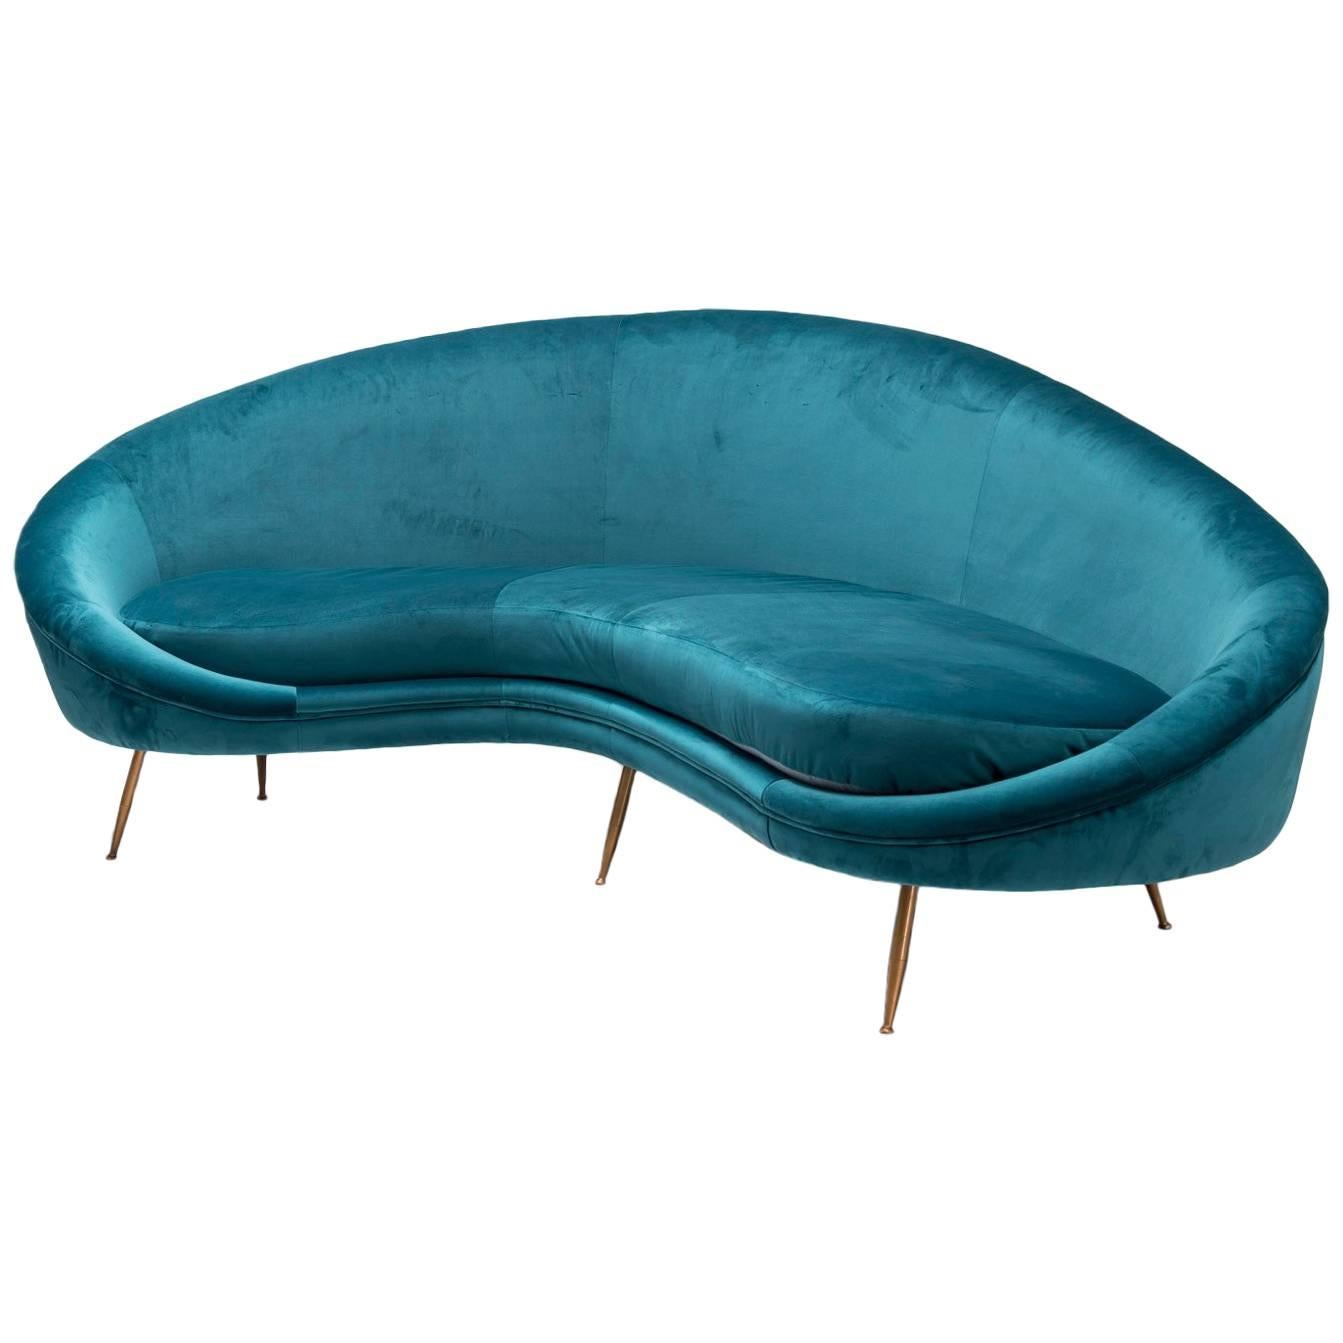 Peacock Blue Velvet 1950s Style Sofa, Italian Work